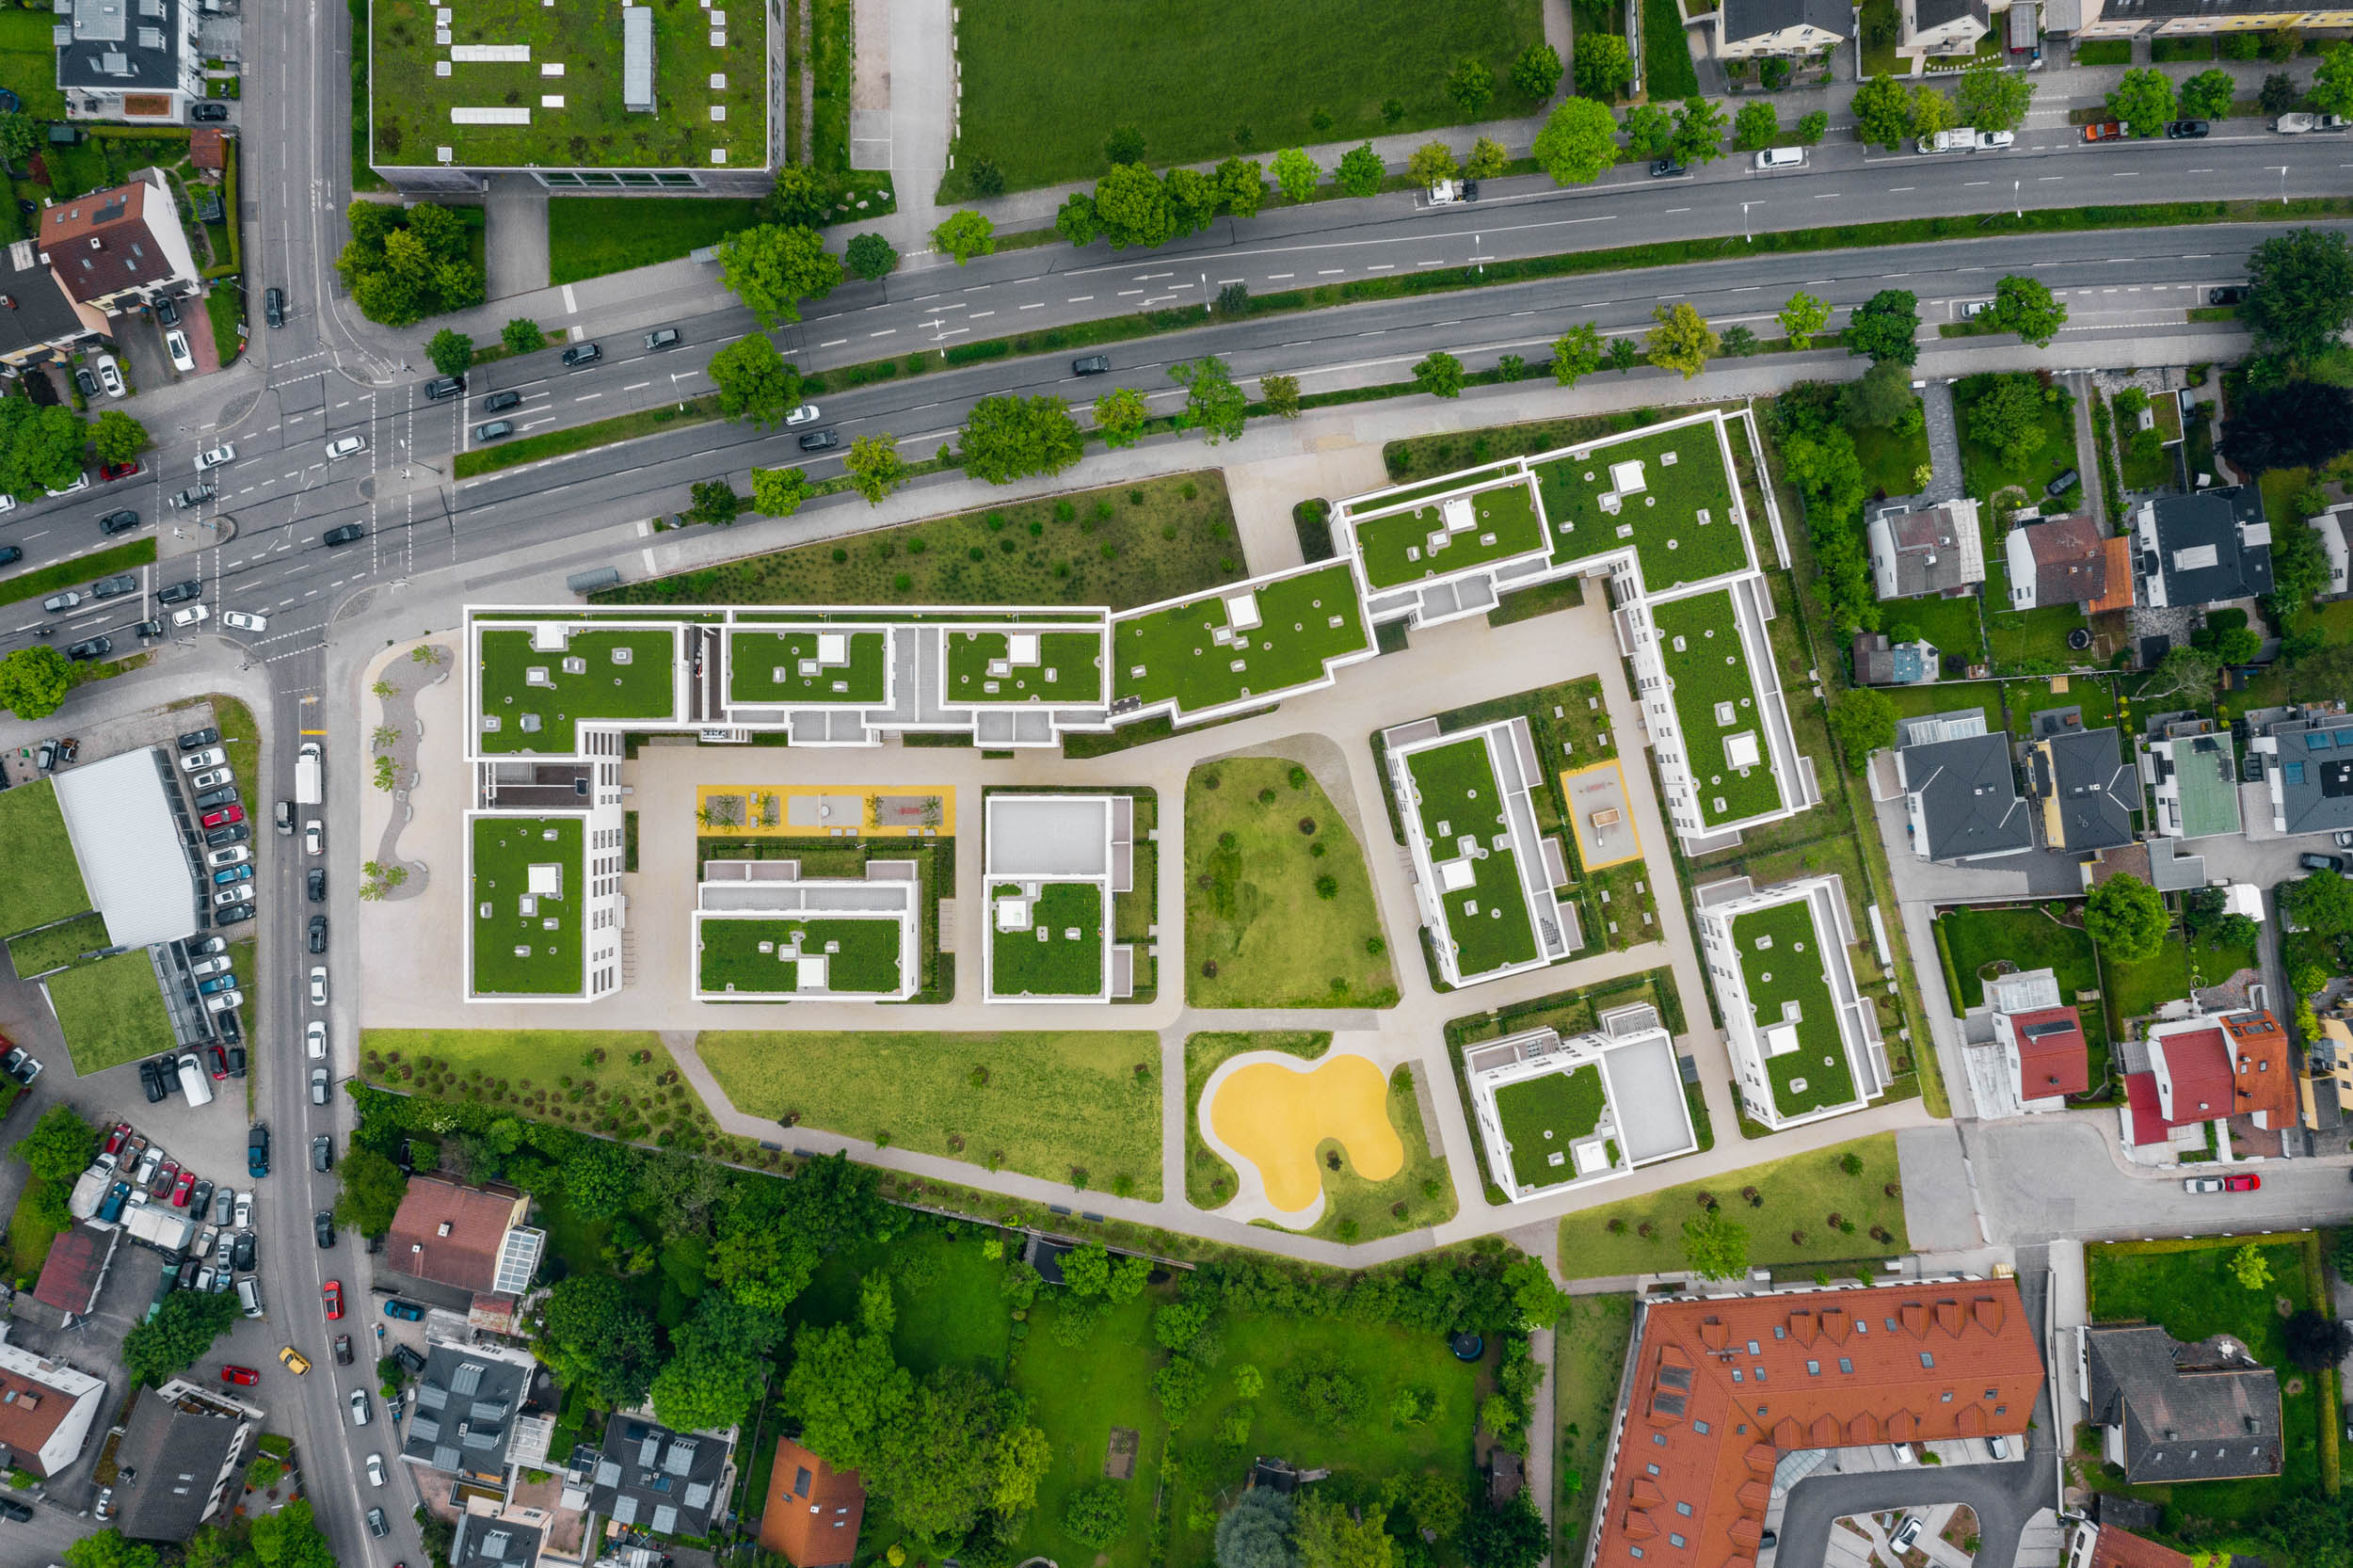 Gustav-Epple-Bauunternehmung-Tru-Living-München-Wohnbau-2020-TruLiving_DJI_0751#00